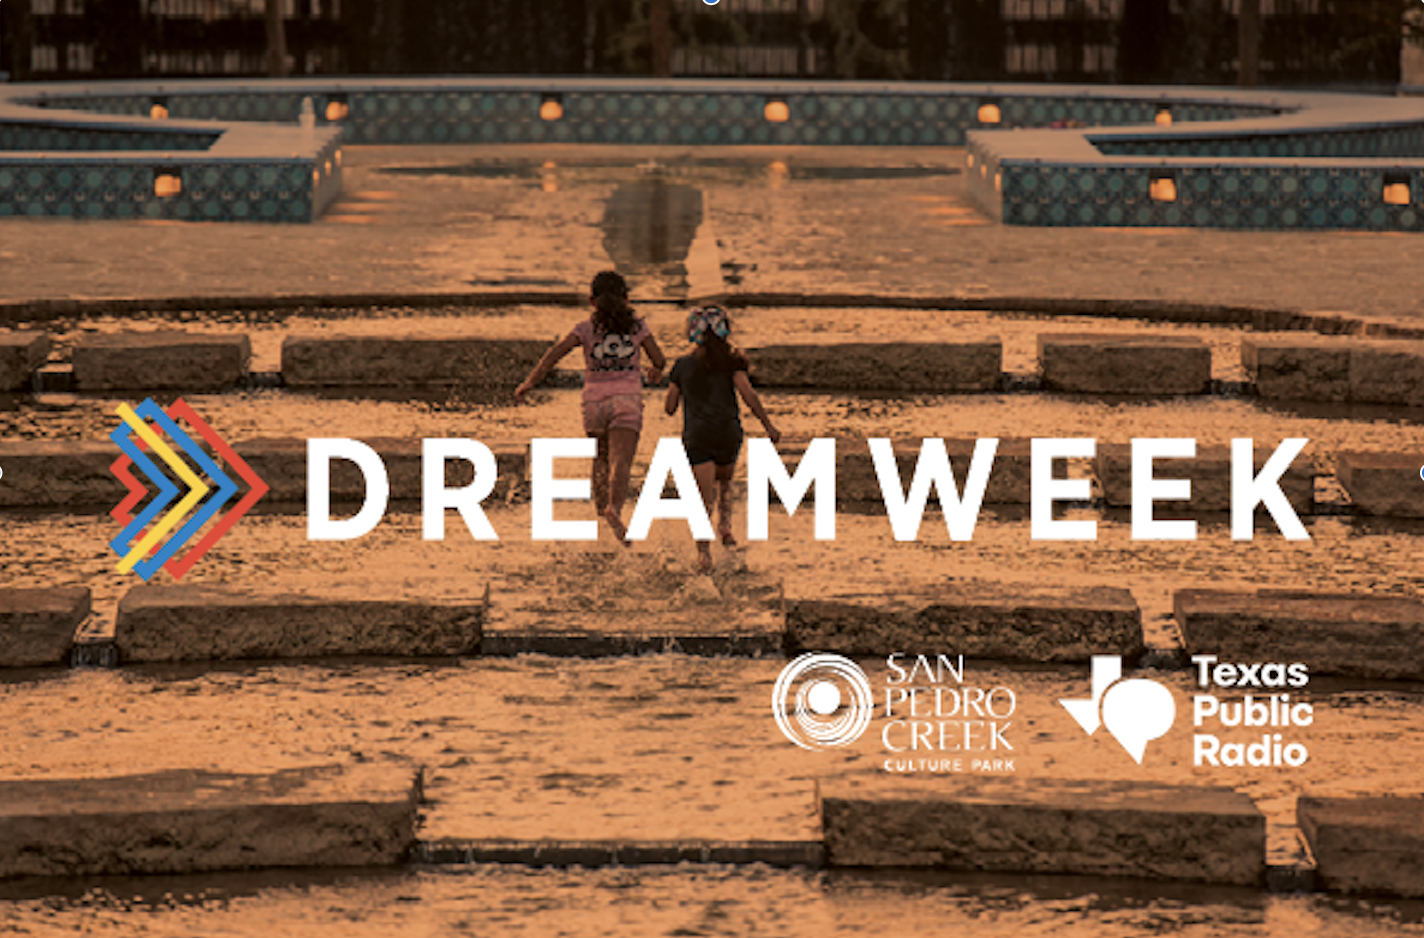 Dreamweek 2022 promotional flyer